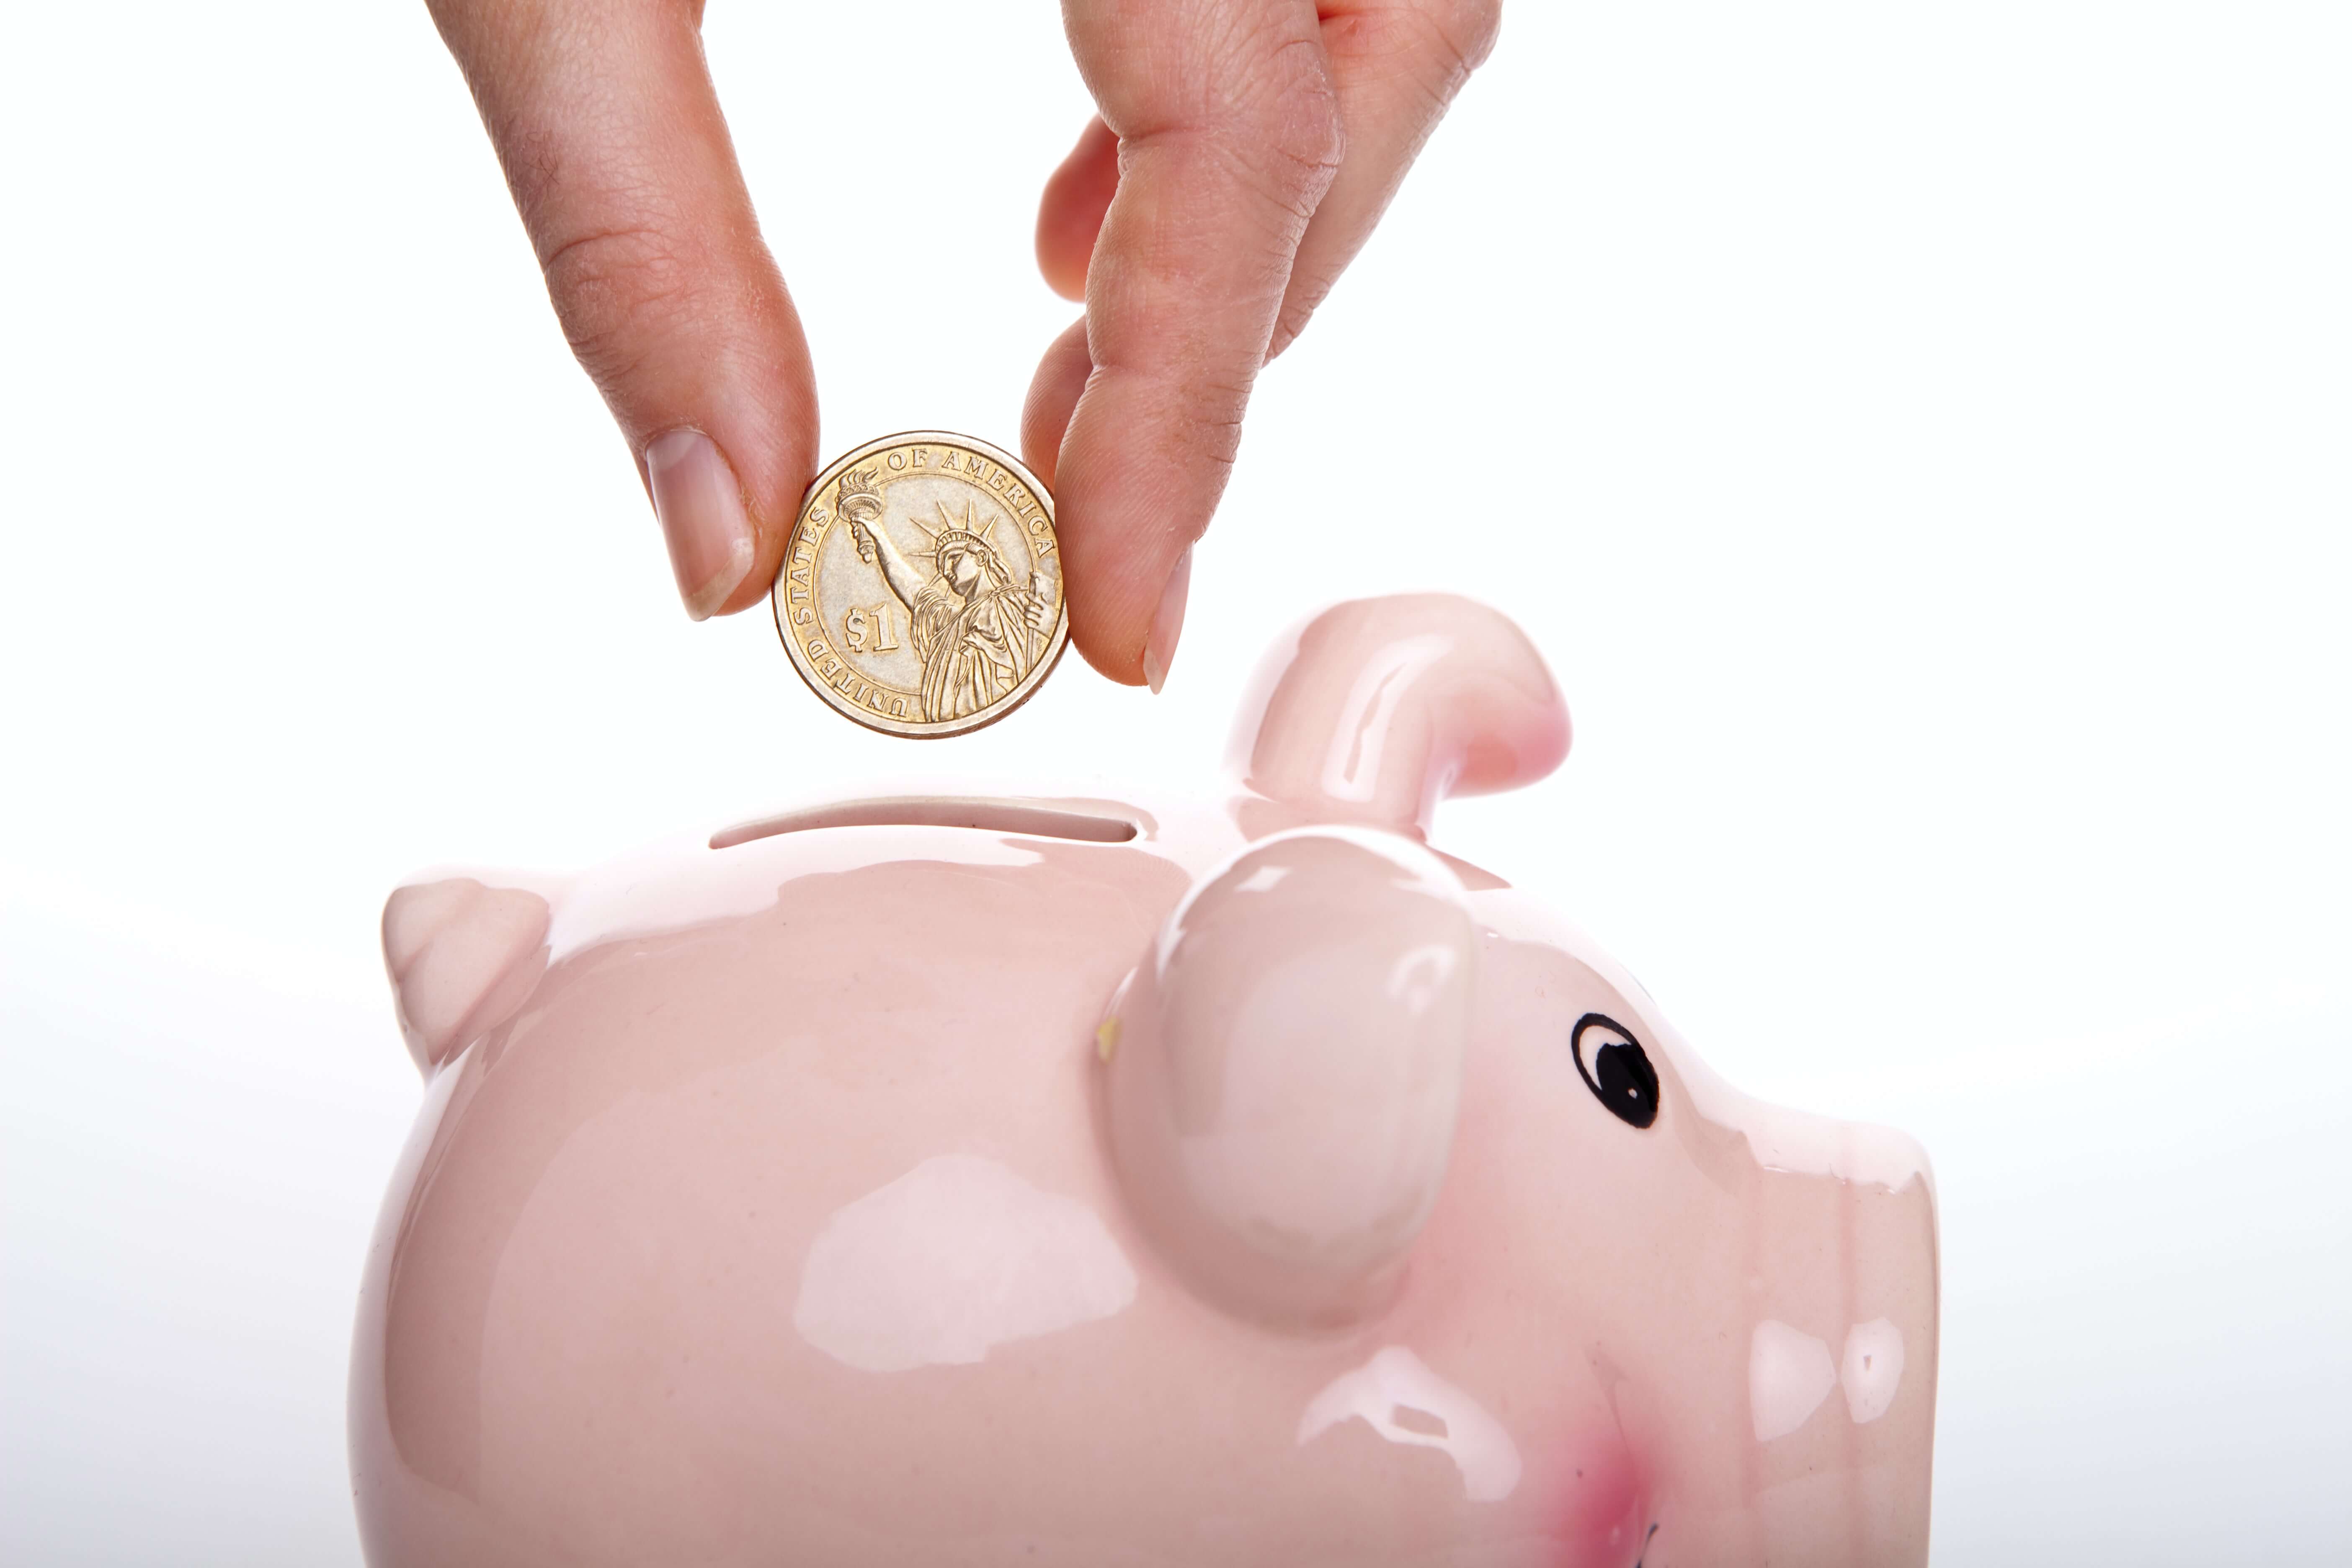 A closeup of a hand dropping a coin into a piggy bank